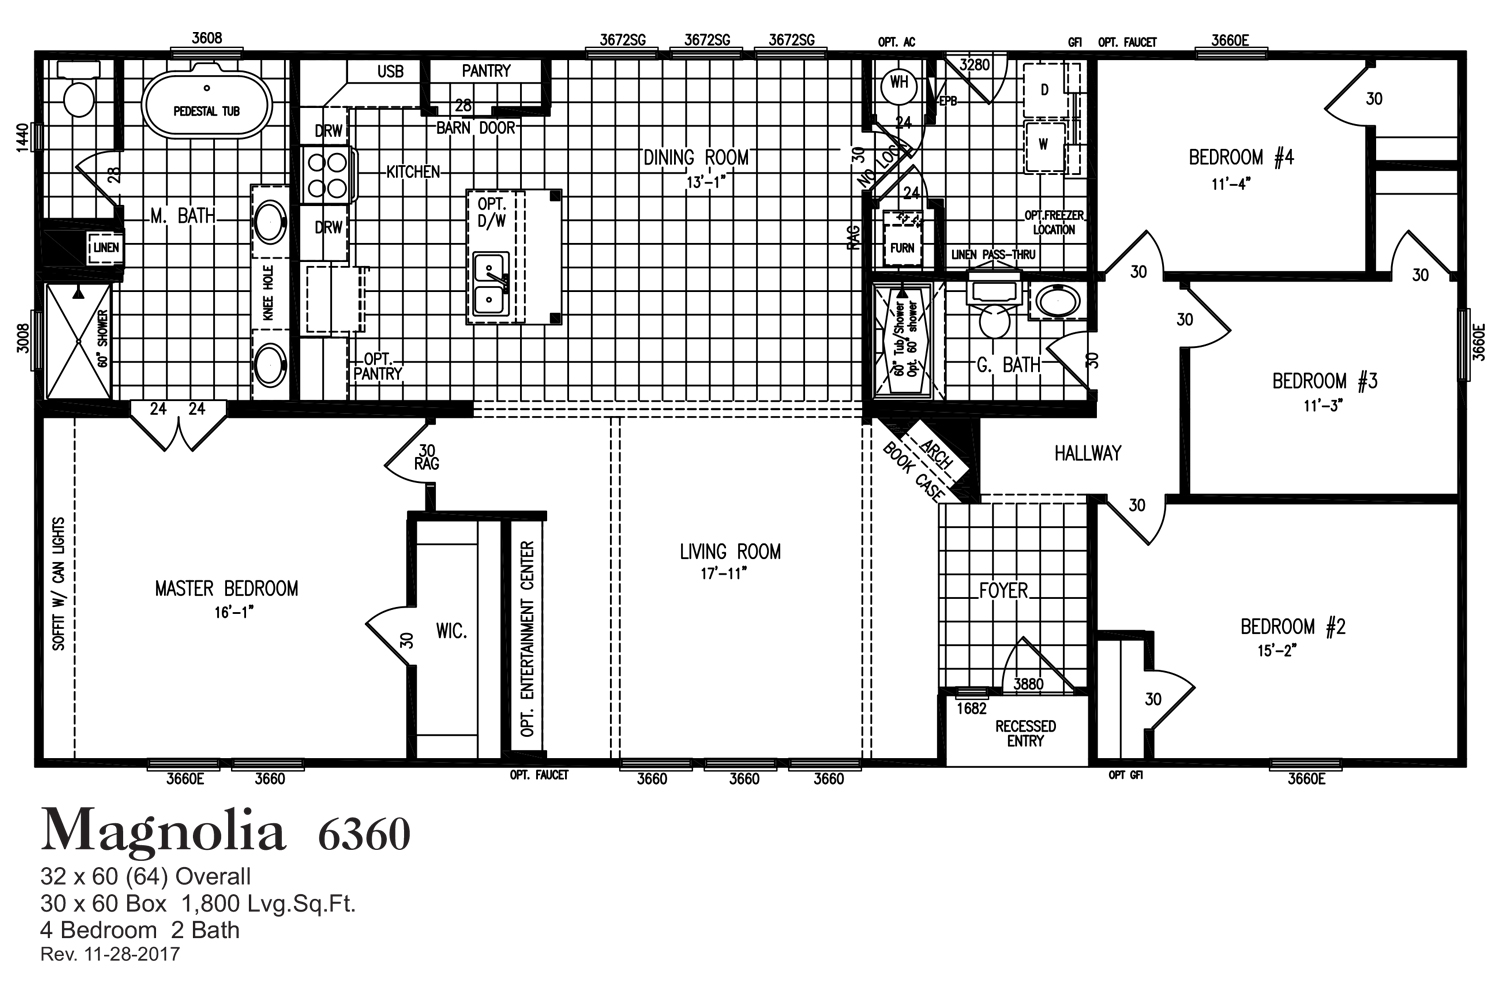 Magnolia 6360 Floorplan